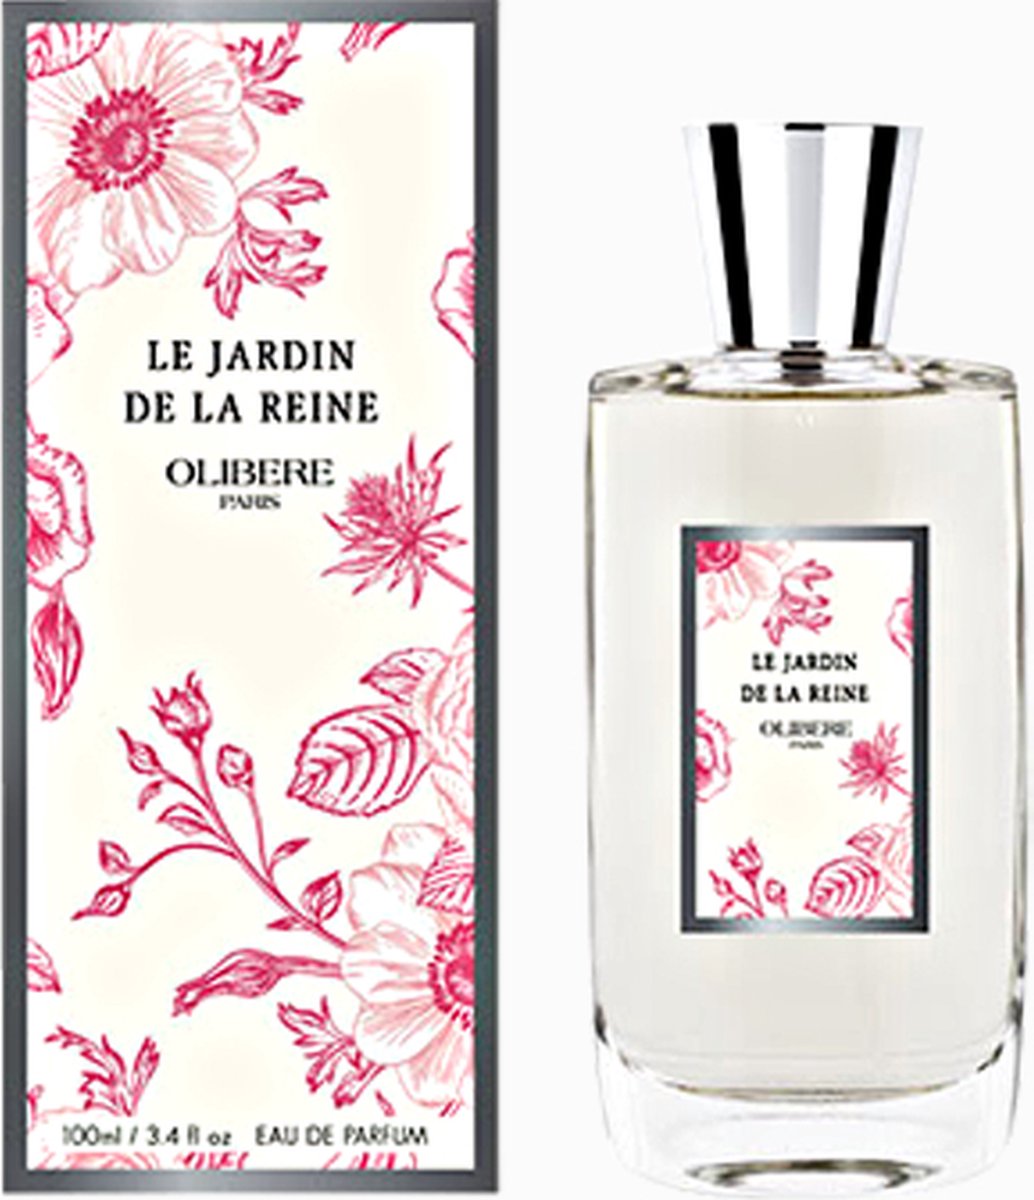 Le Jardin de La Reine Eau de Parfum